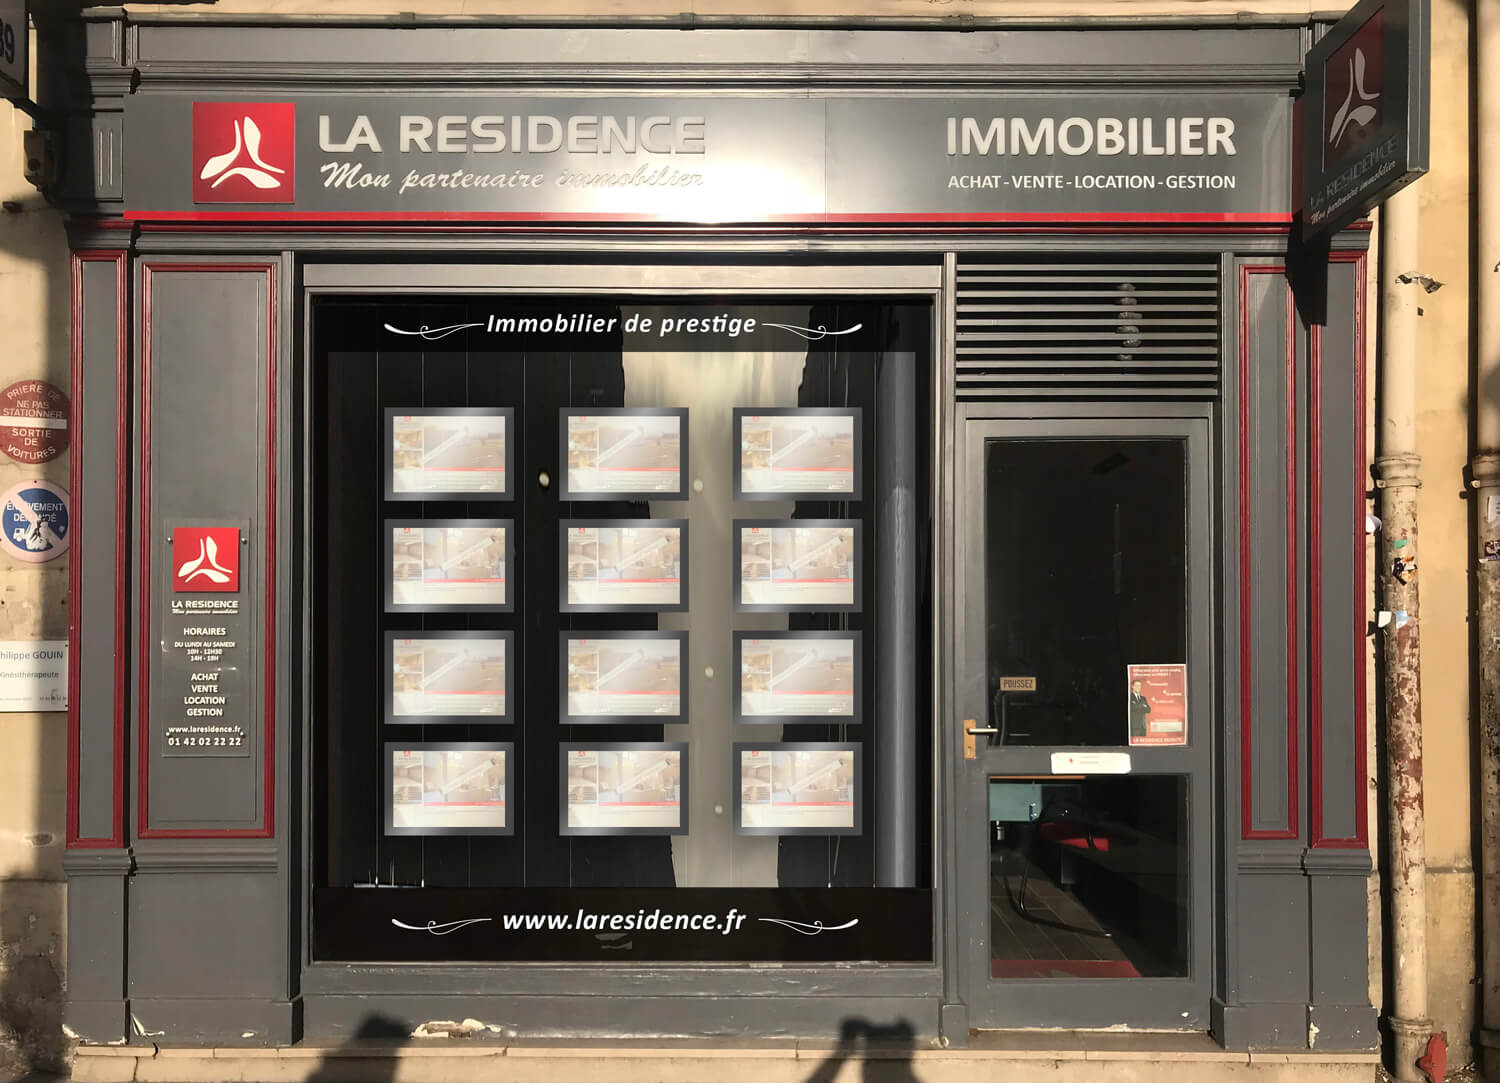 Évaluation et estimation immobilière gratuite en ligne à Paris 13ème - LA RESIDENCE